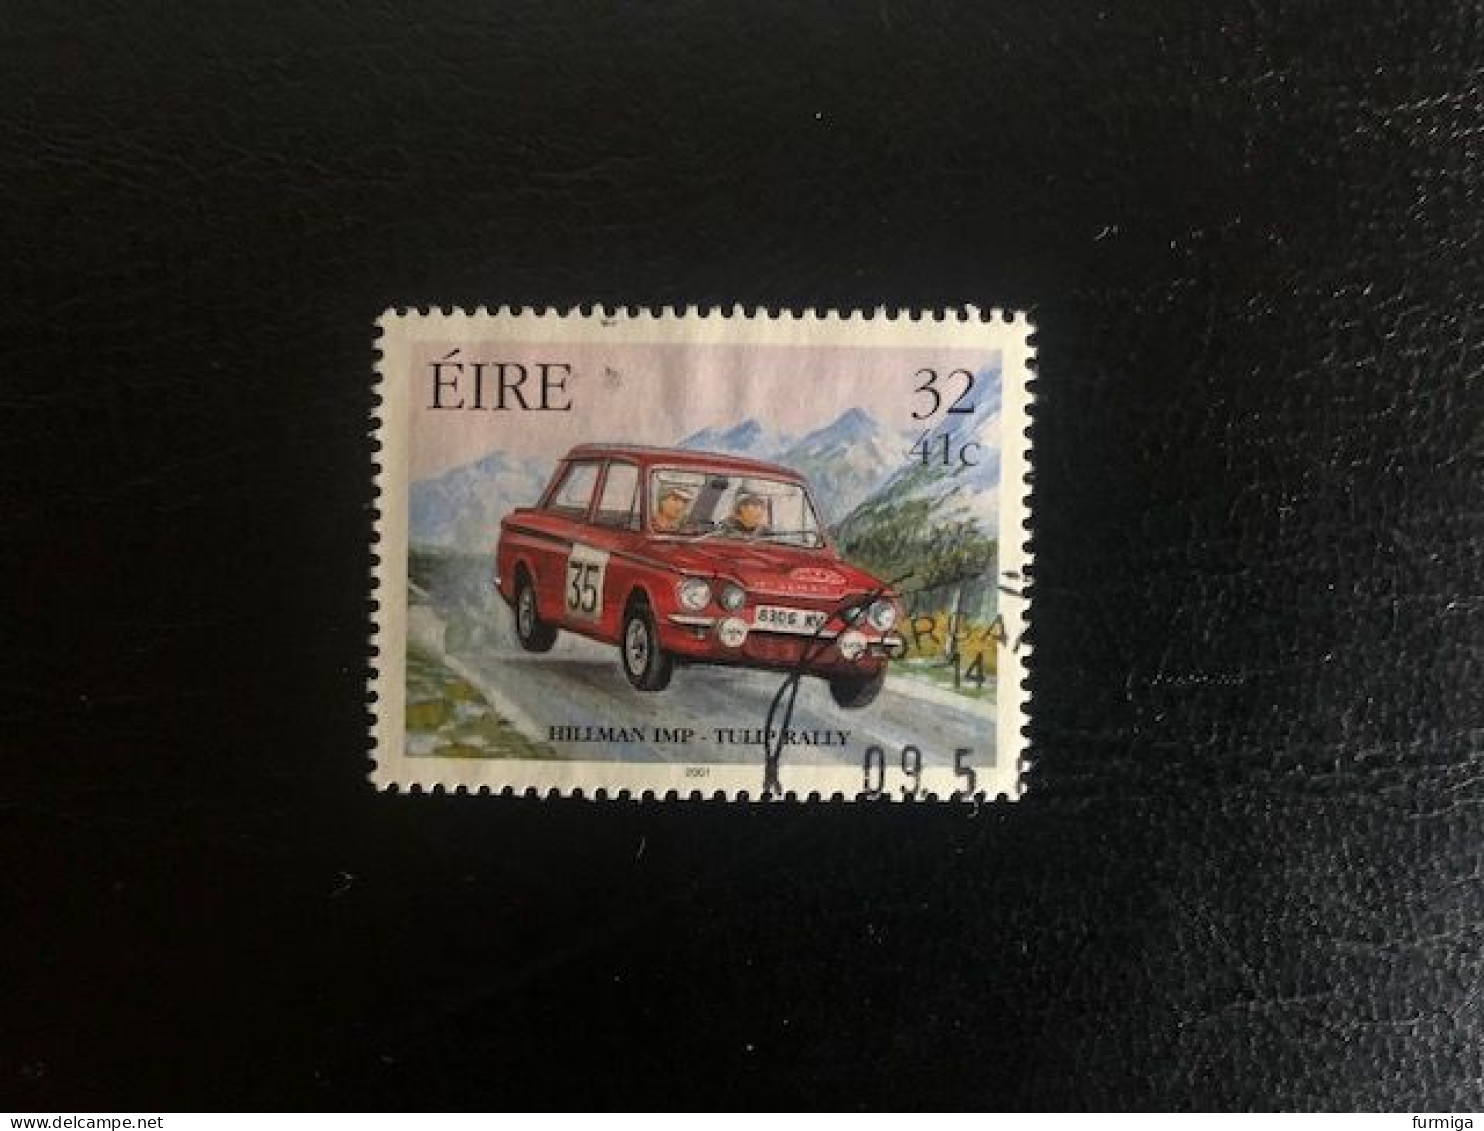 Irland EIRE 2001 - 1324 - Fein RUND Gestempelt - Fine Used LUX Postmark - Usati